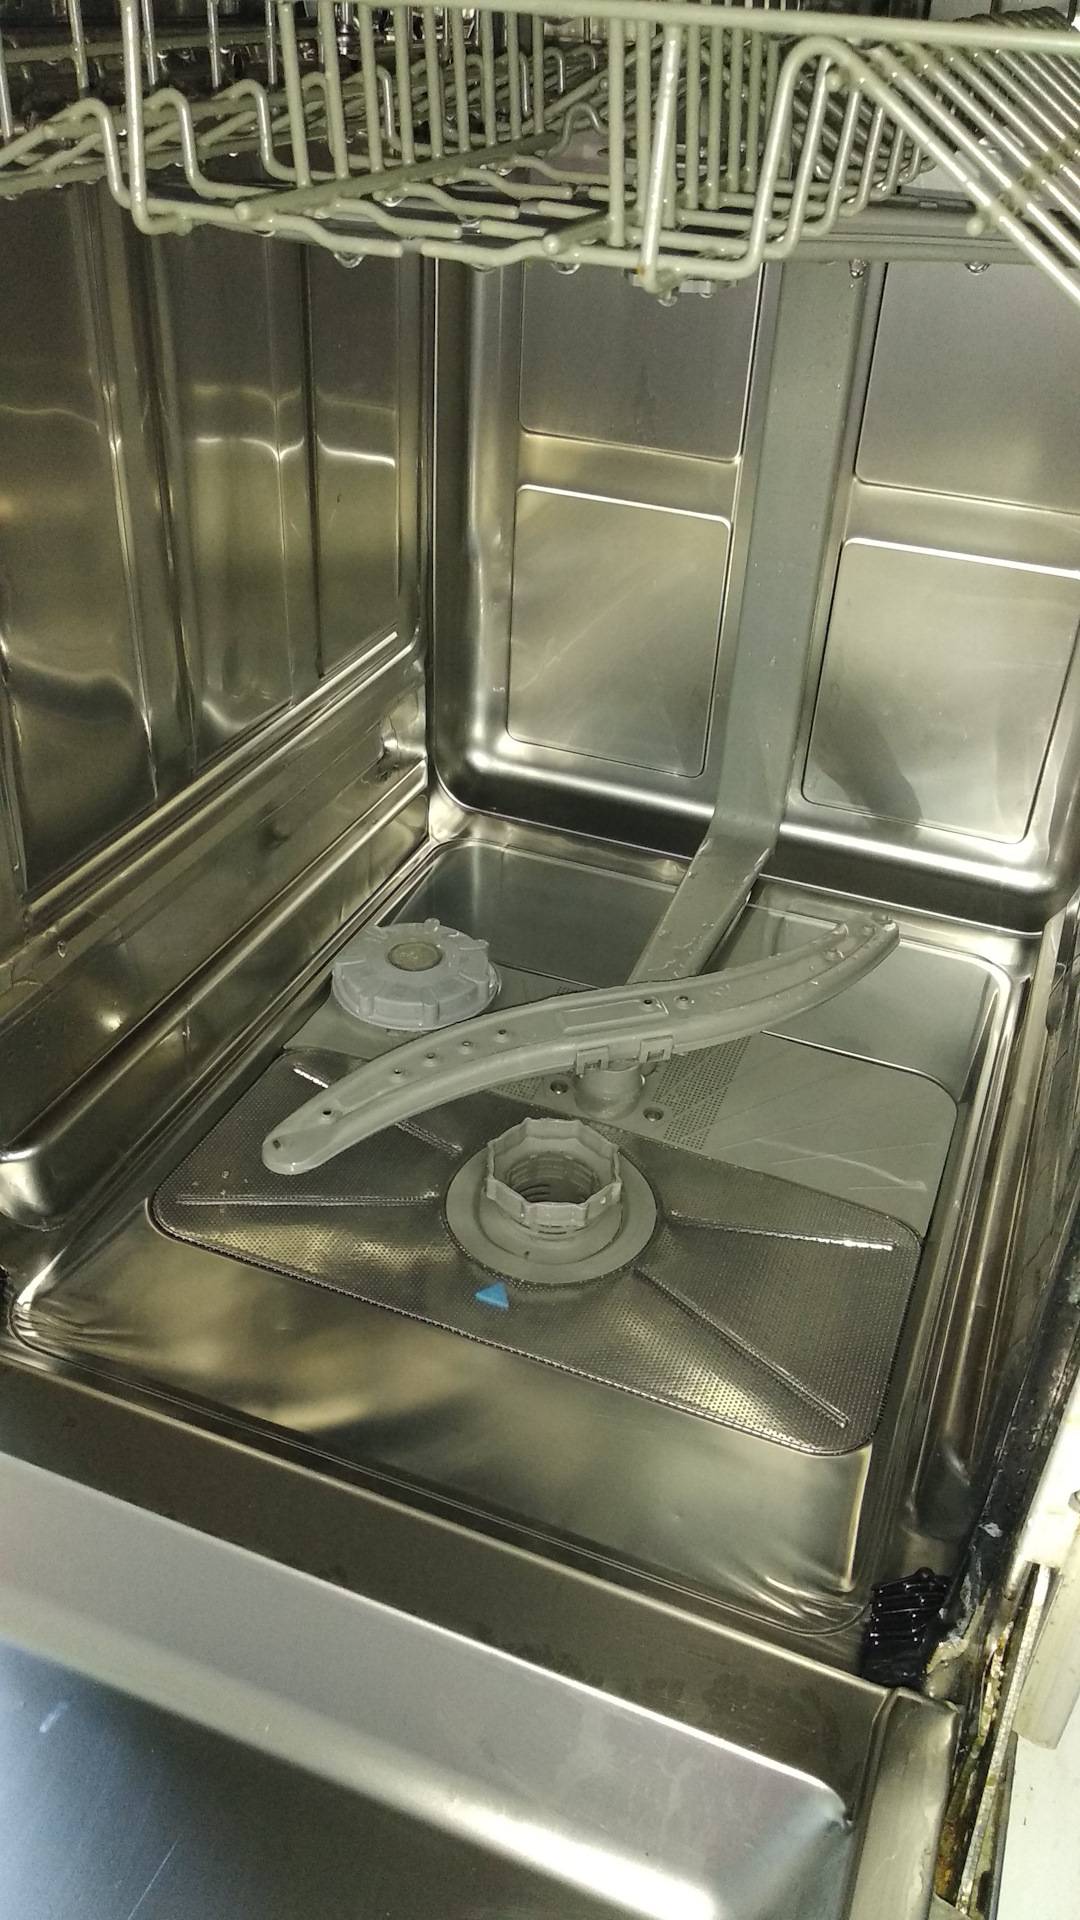 Посудомоечная машина плохо моет посуду: причины неполадок, почему стала плохо мыть, пмм не промывает посуду, способы устранения проблем